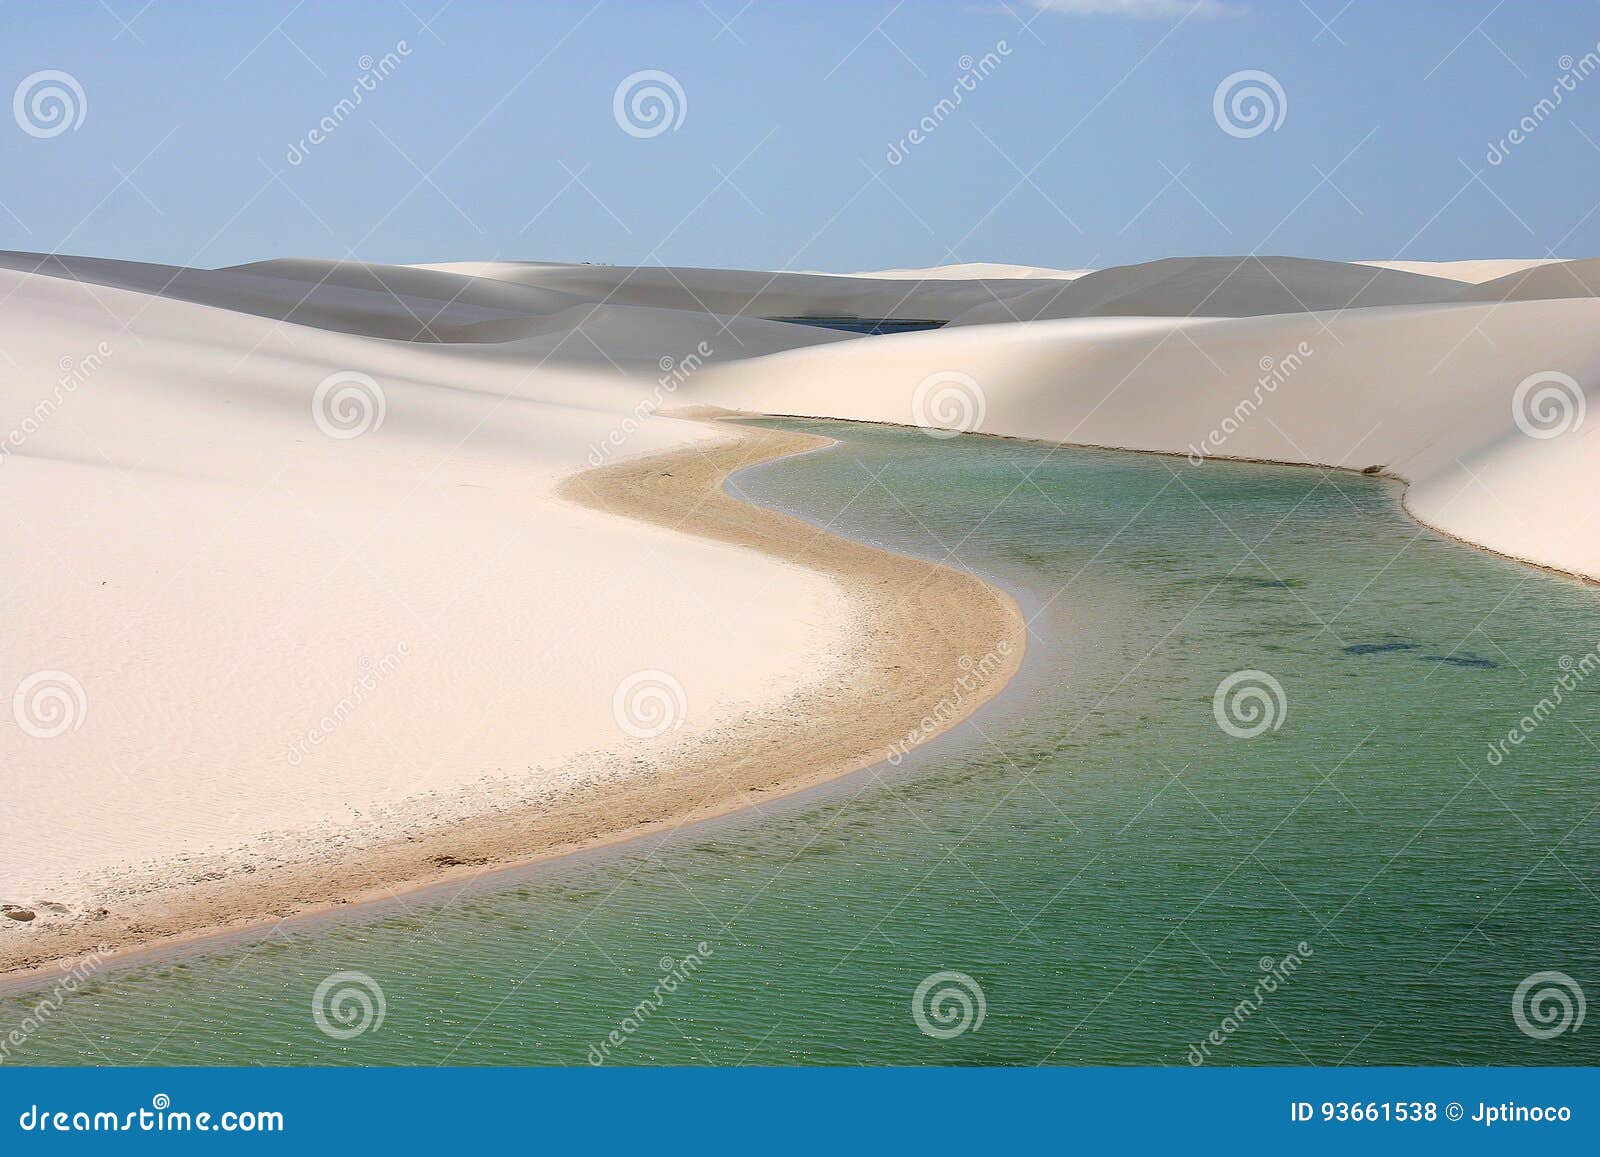 lencois maranhenses sand dunes, brazil